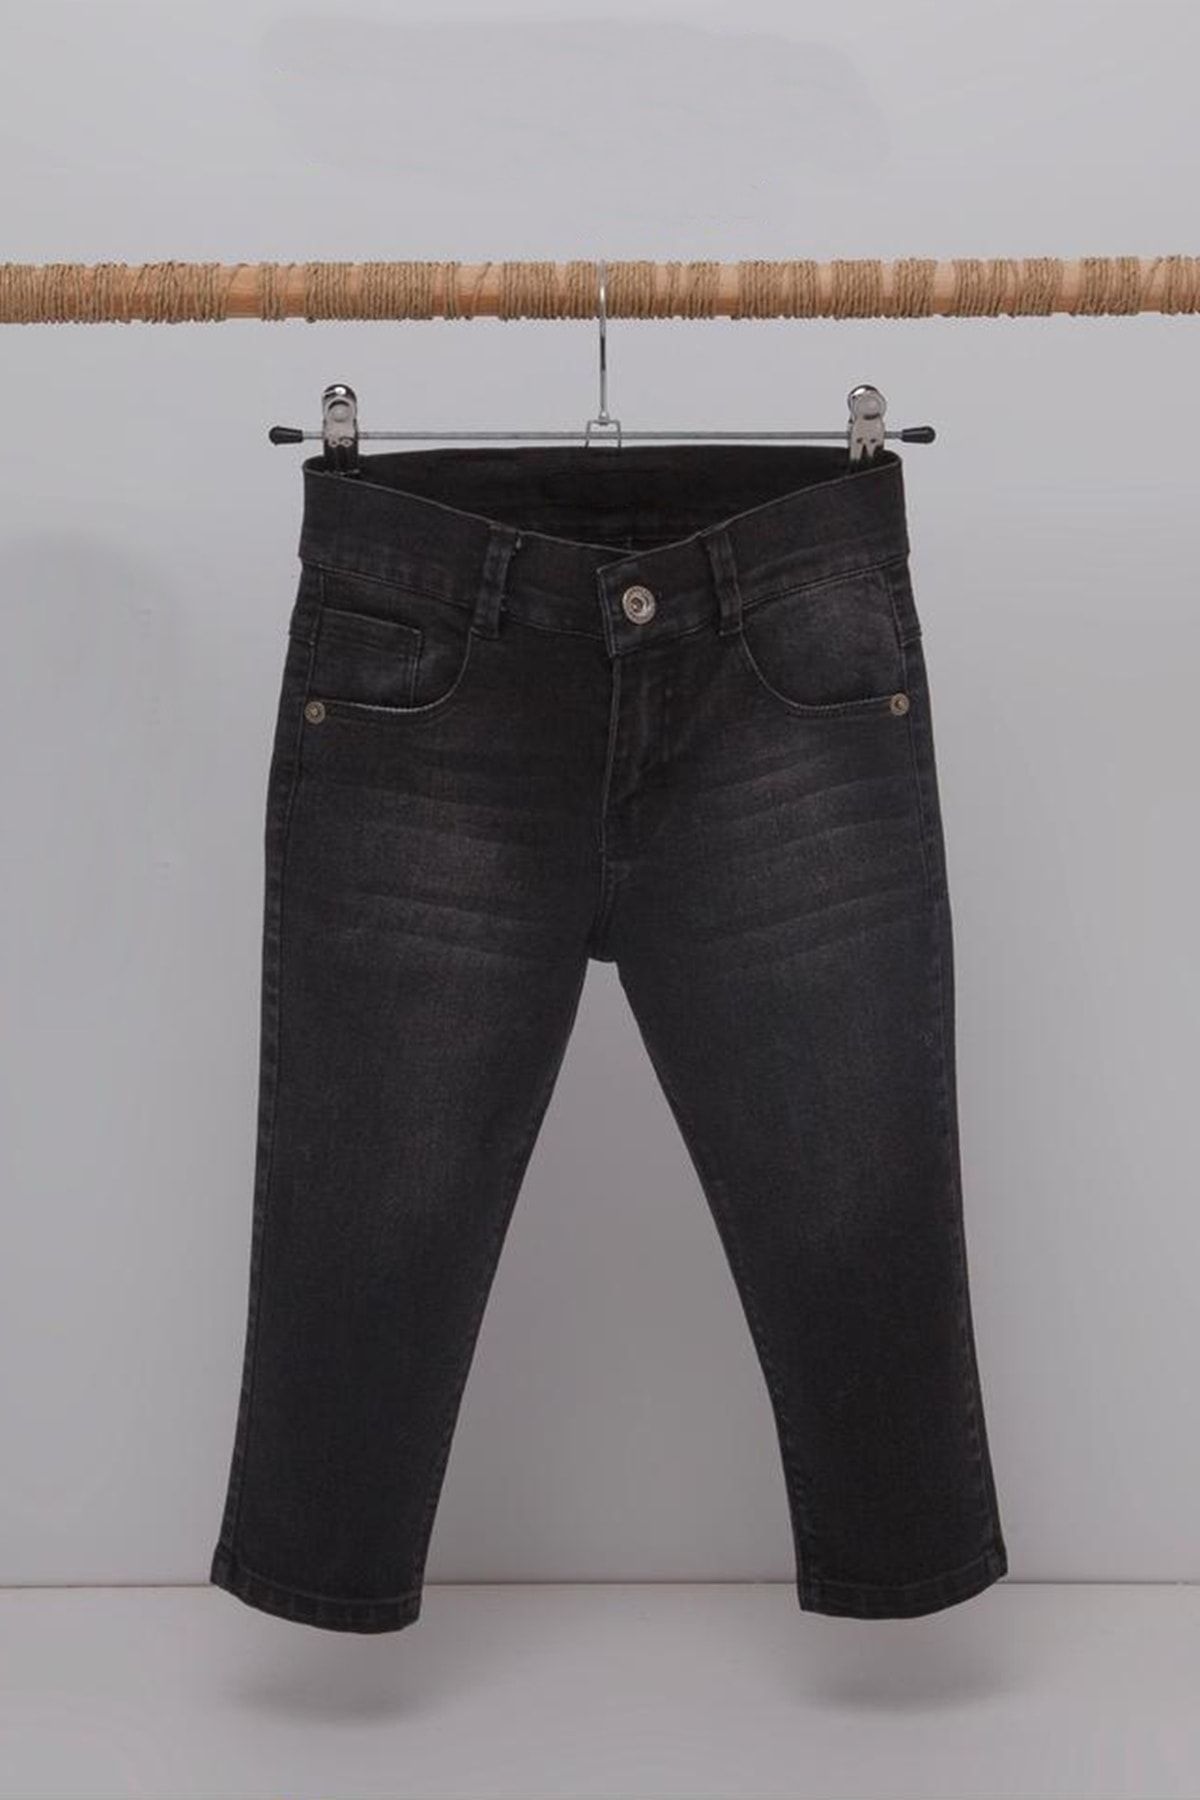 ADABEBEK Erkek Çocuk Likralı Taşlamalı Jeans Kot Pantolon 4202-5202